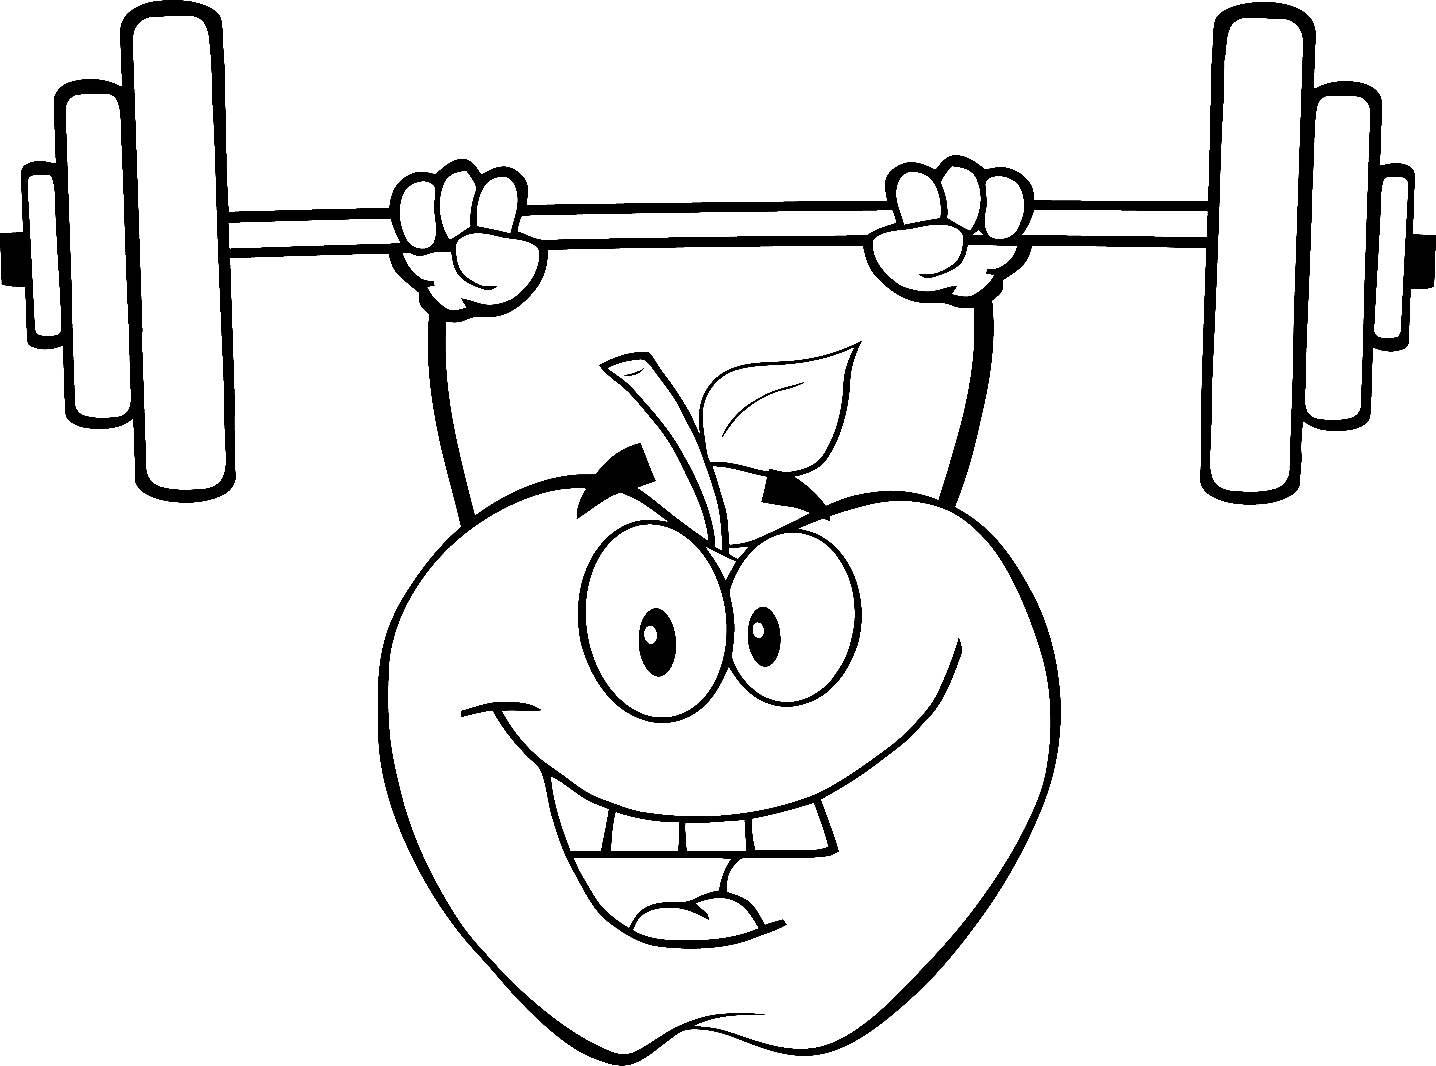 Apple Lifting Weights vom Gewichtheben